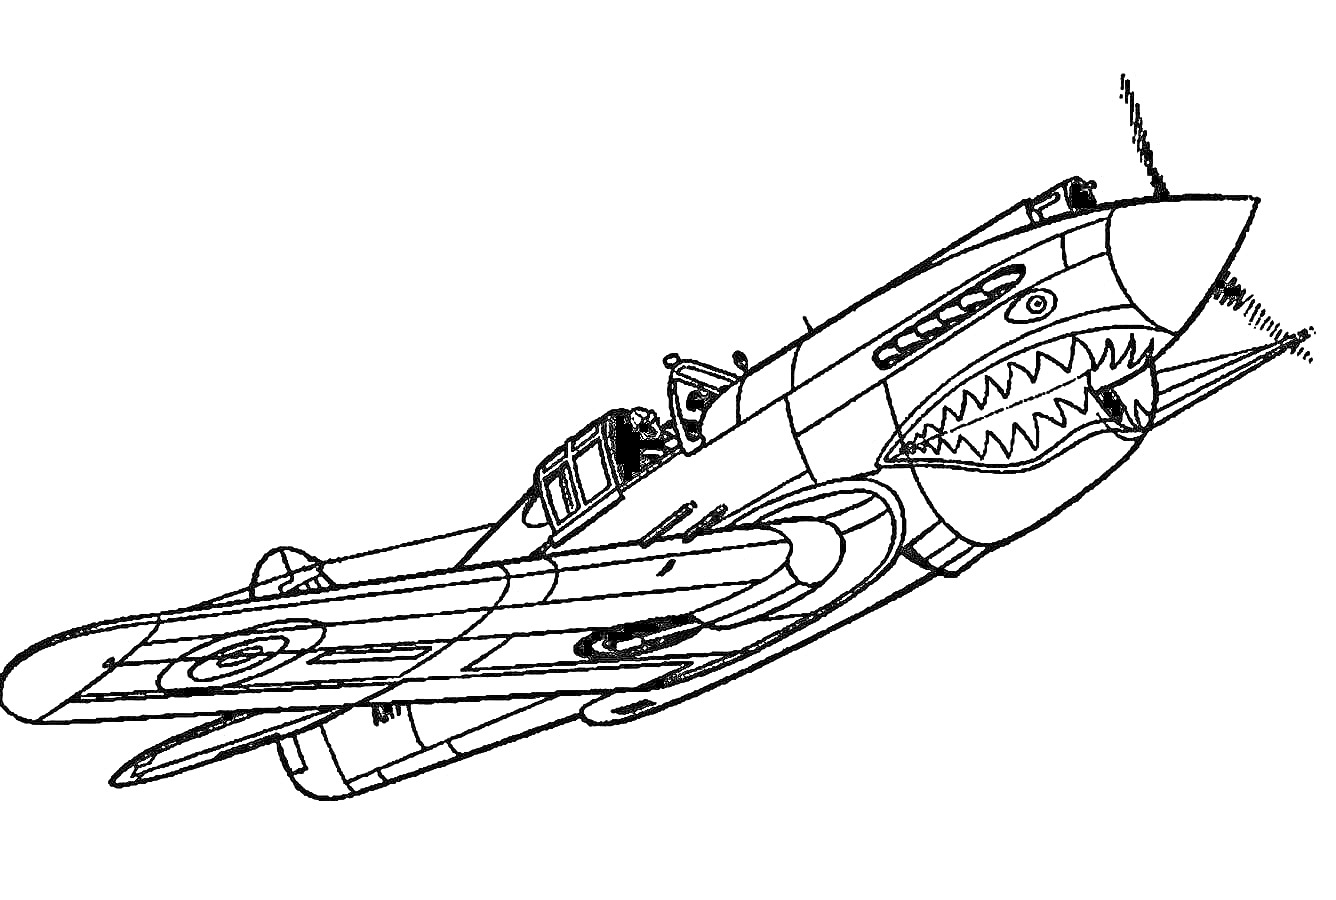 Военный самолет с изображением акульих зубов на передней части, пилот в кабине, оружие на крыльях, авиационные знаки на крыльях, винт спереди.